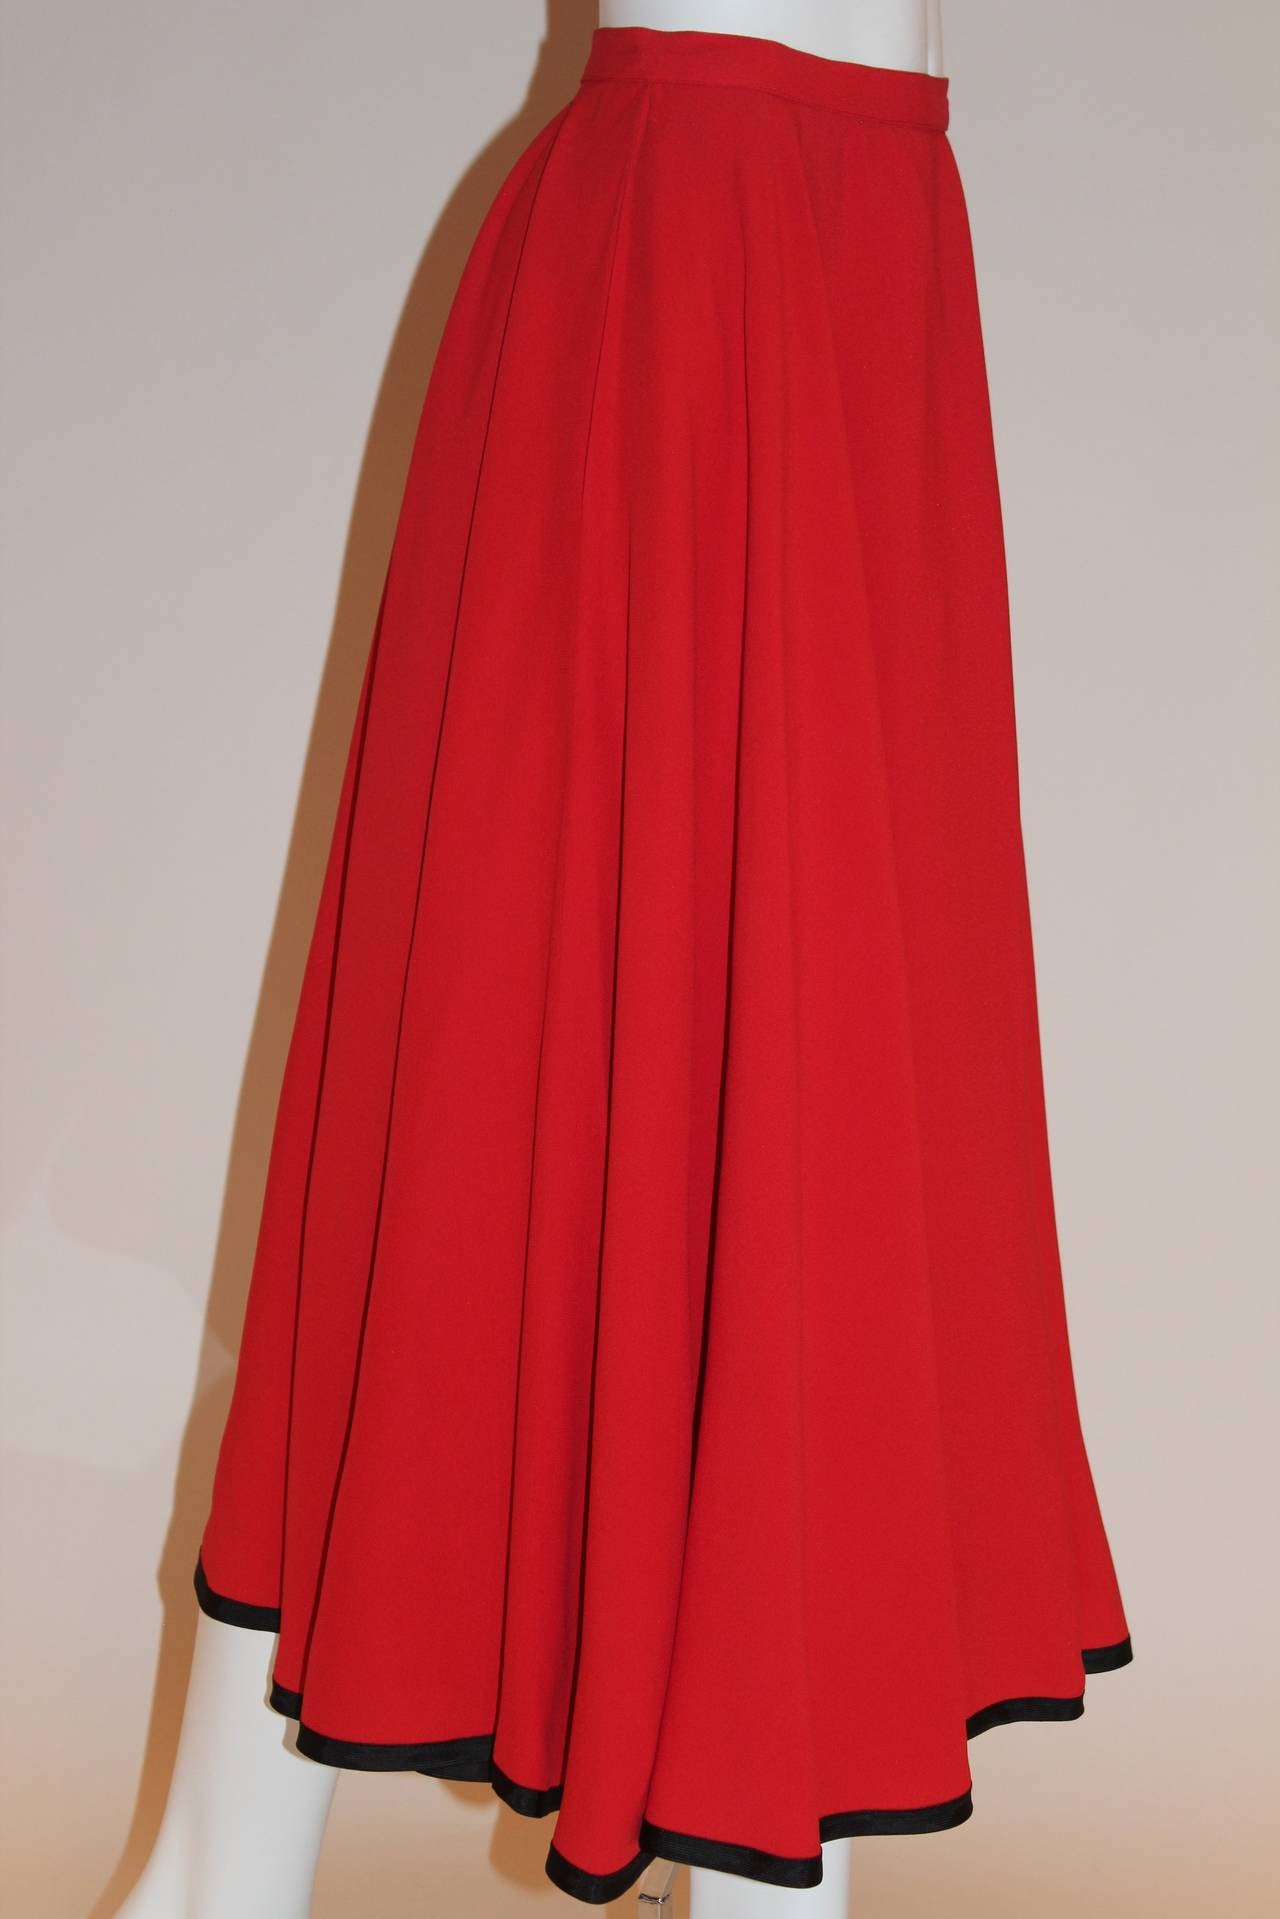 Yves Saint Laurent Rive Gauche Vintage Red Skirt 1